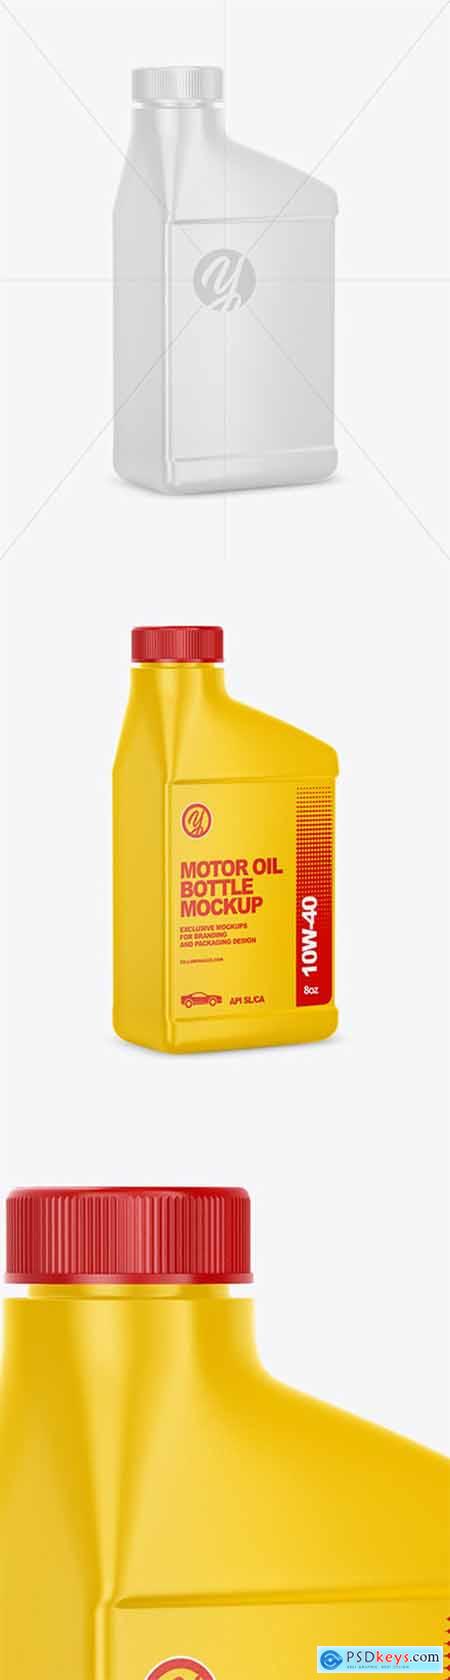 Motor Oil Bottle Mockup 60632